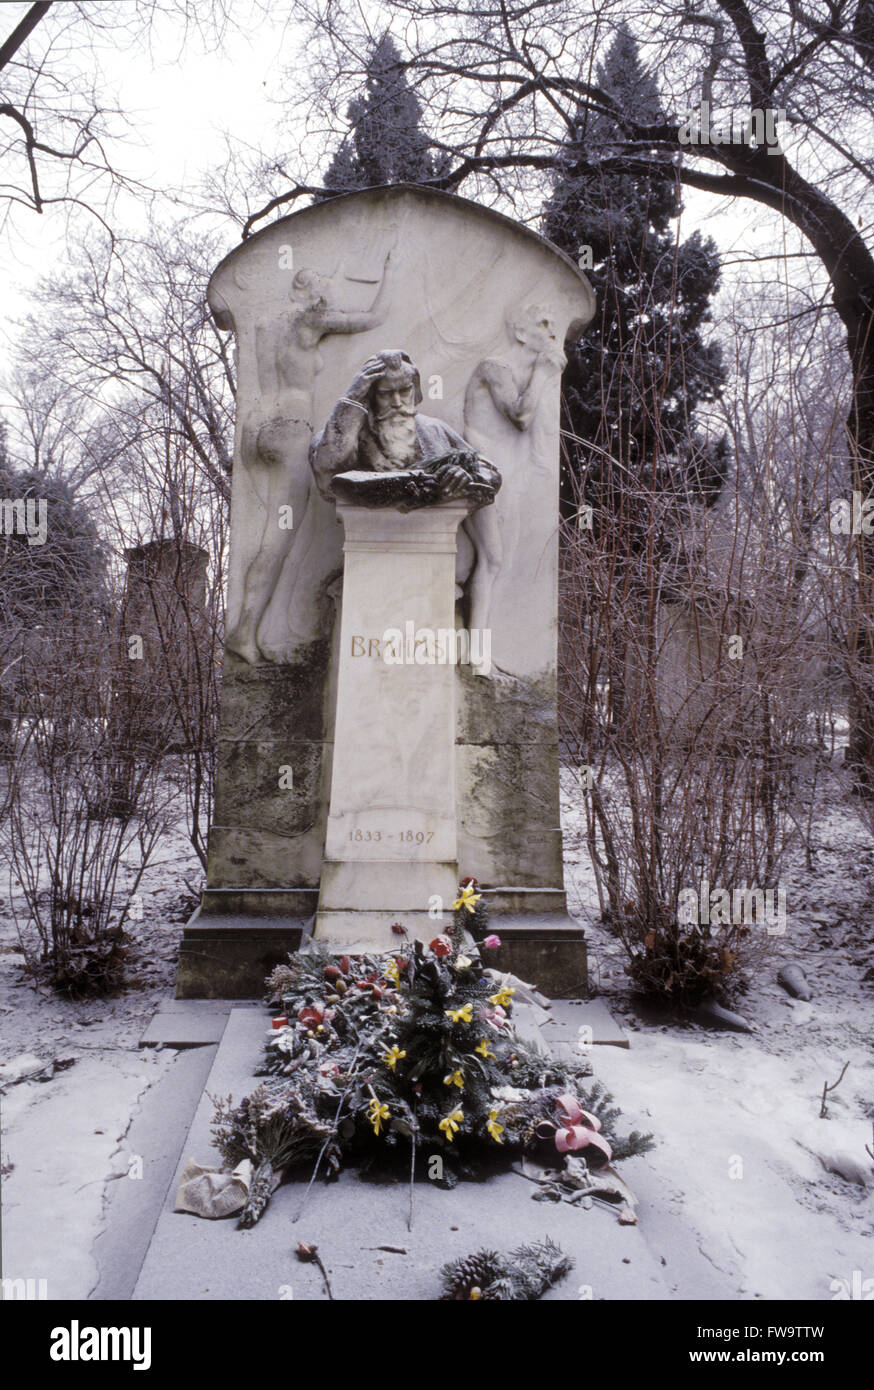 AUT, l'Autriche, Vienne, la tombe du compositeur Johannes Brahms au cimetière central. Tau, Oesterreich, Wien, das Grab des K Banque D'Images